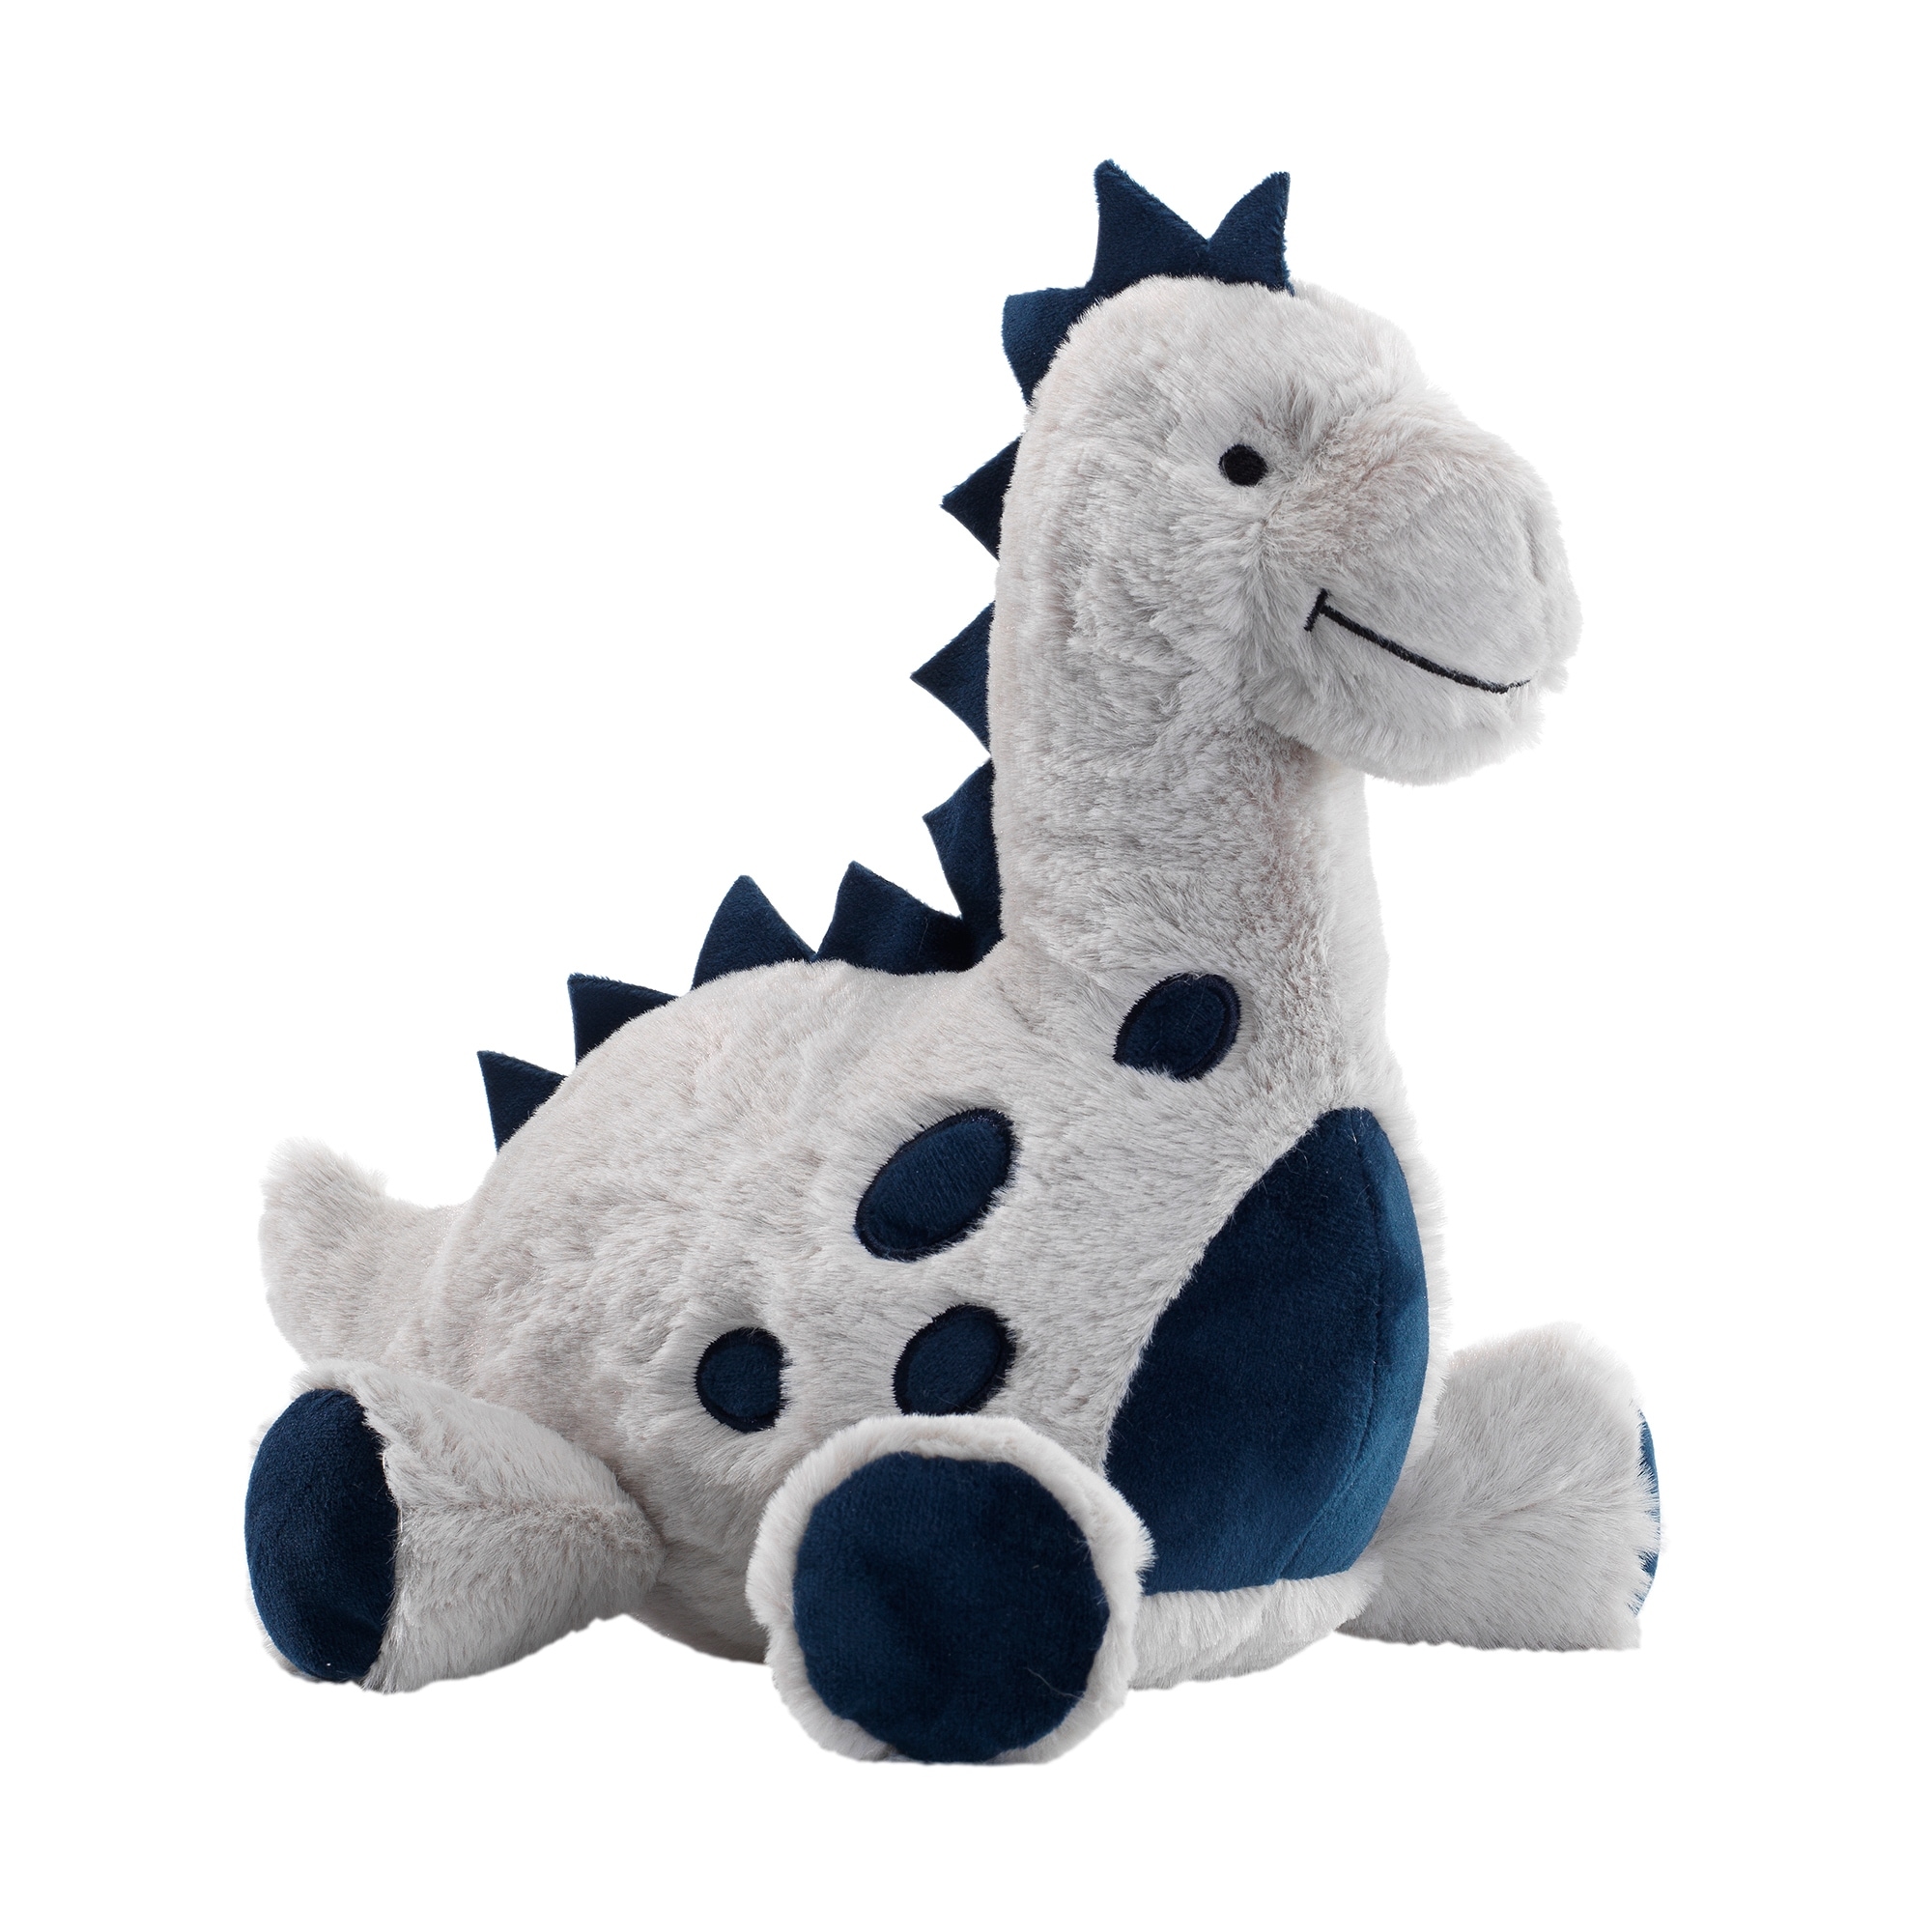 dinosaur plush toy